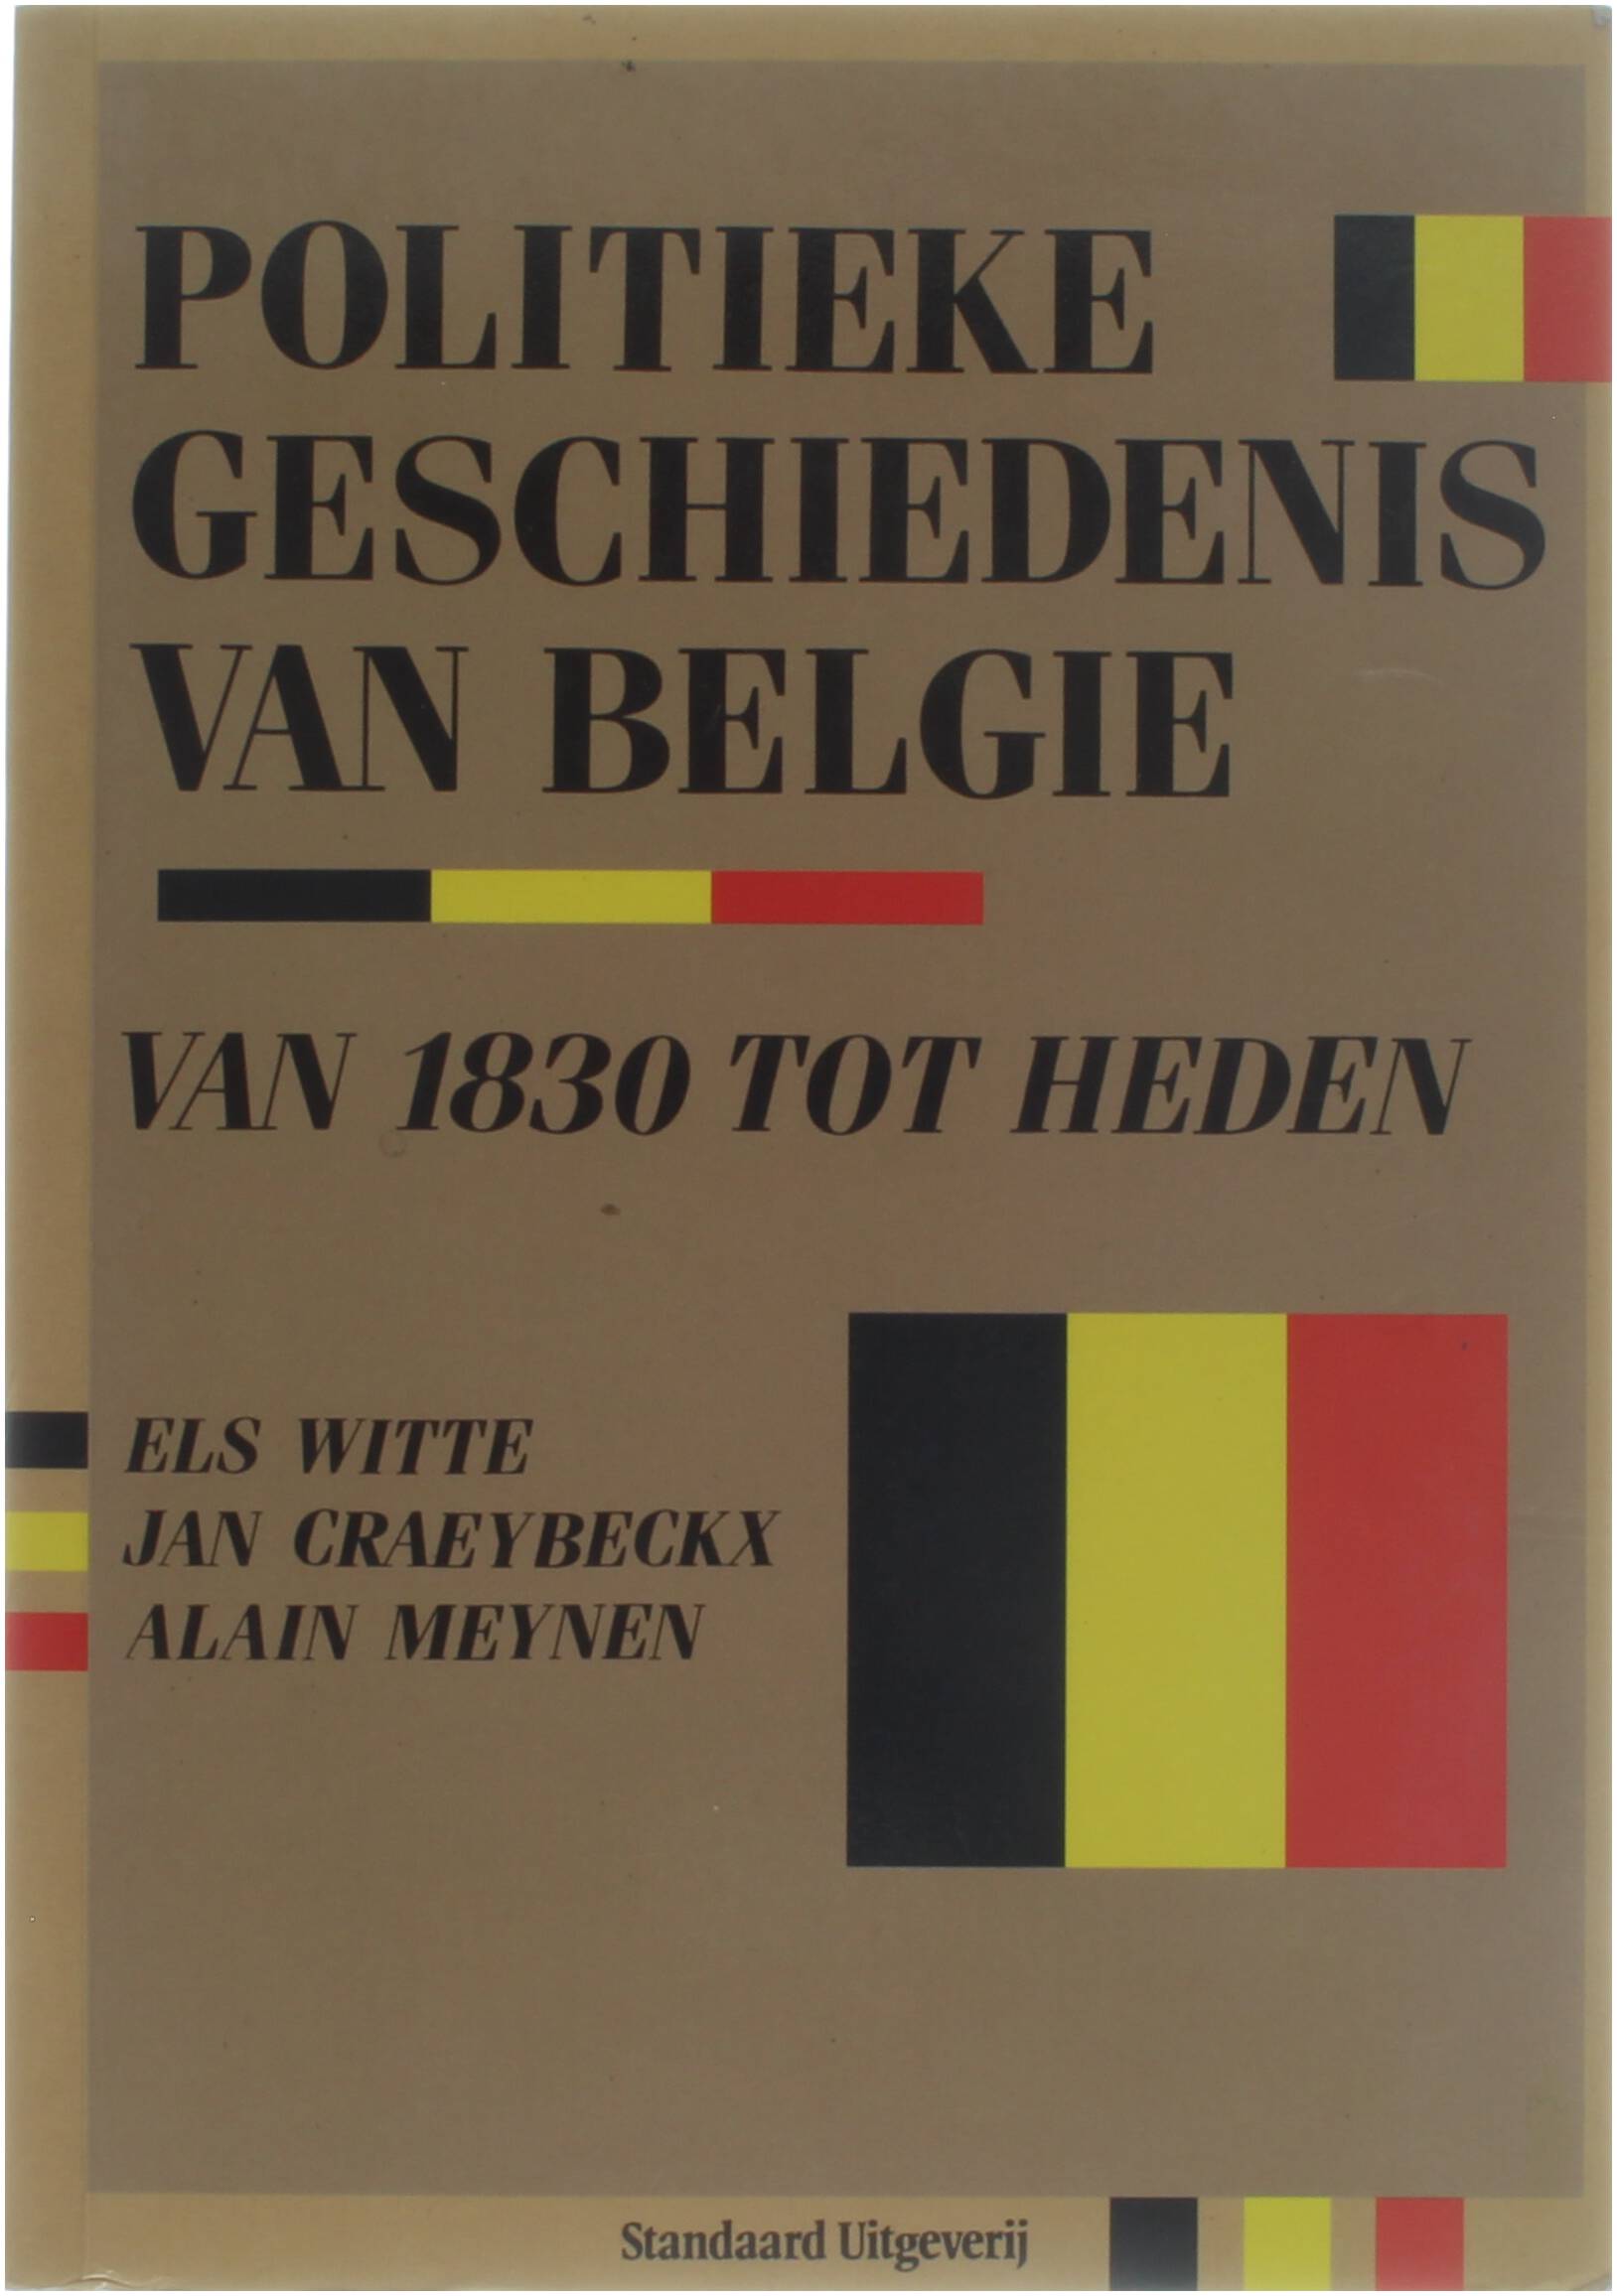 Politieke geschiedenis van BelgiÃ« van 1830 tot heden - Els Witte; Jan Craeybeckx; Alain Meynen